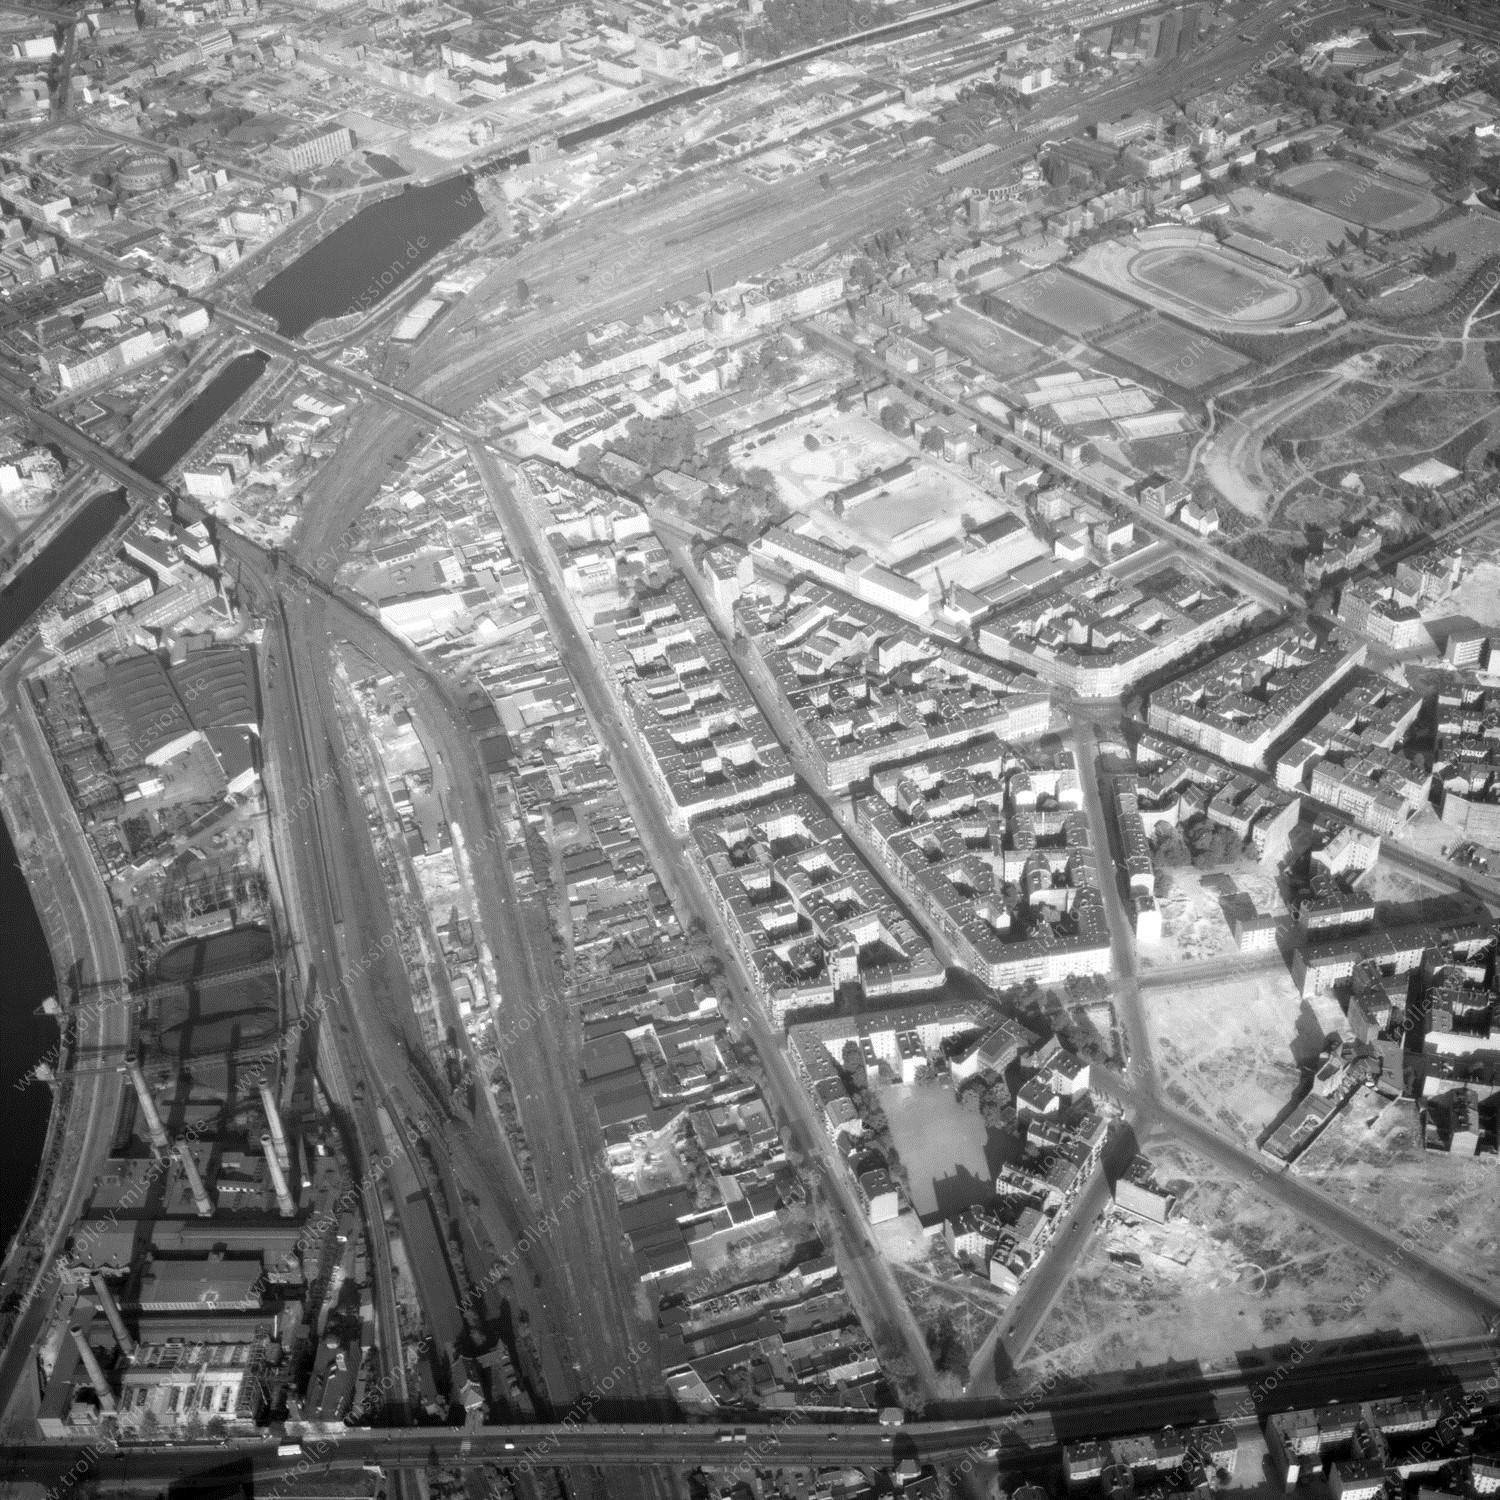 Alte Fotos und Luftbilder von Berlin - Luftbildaufnahme Nr. 04 - Historische Luftaufnahmen von West-Berlin aus dem Jahr 1954 - Flugstrecke Oscar